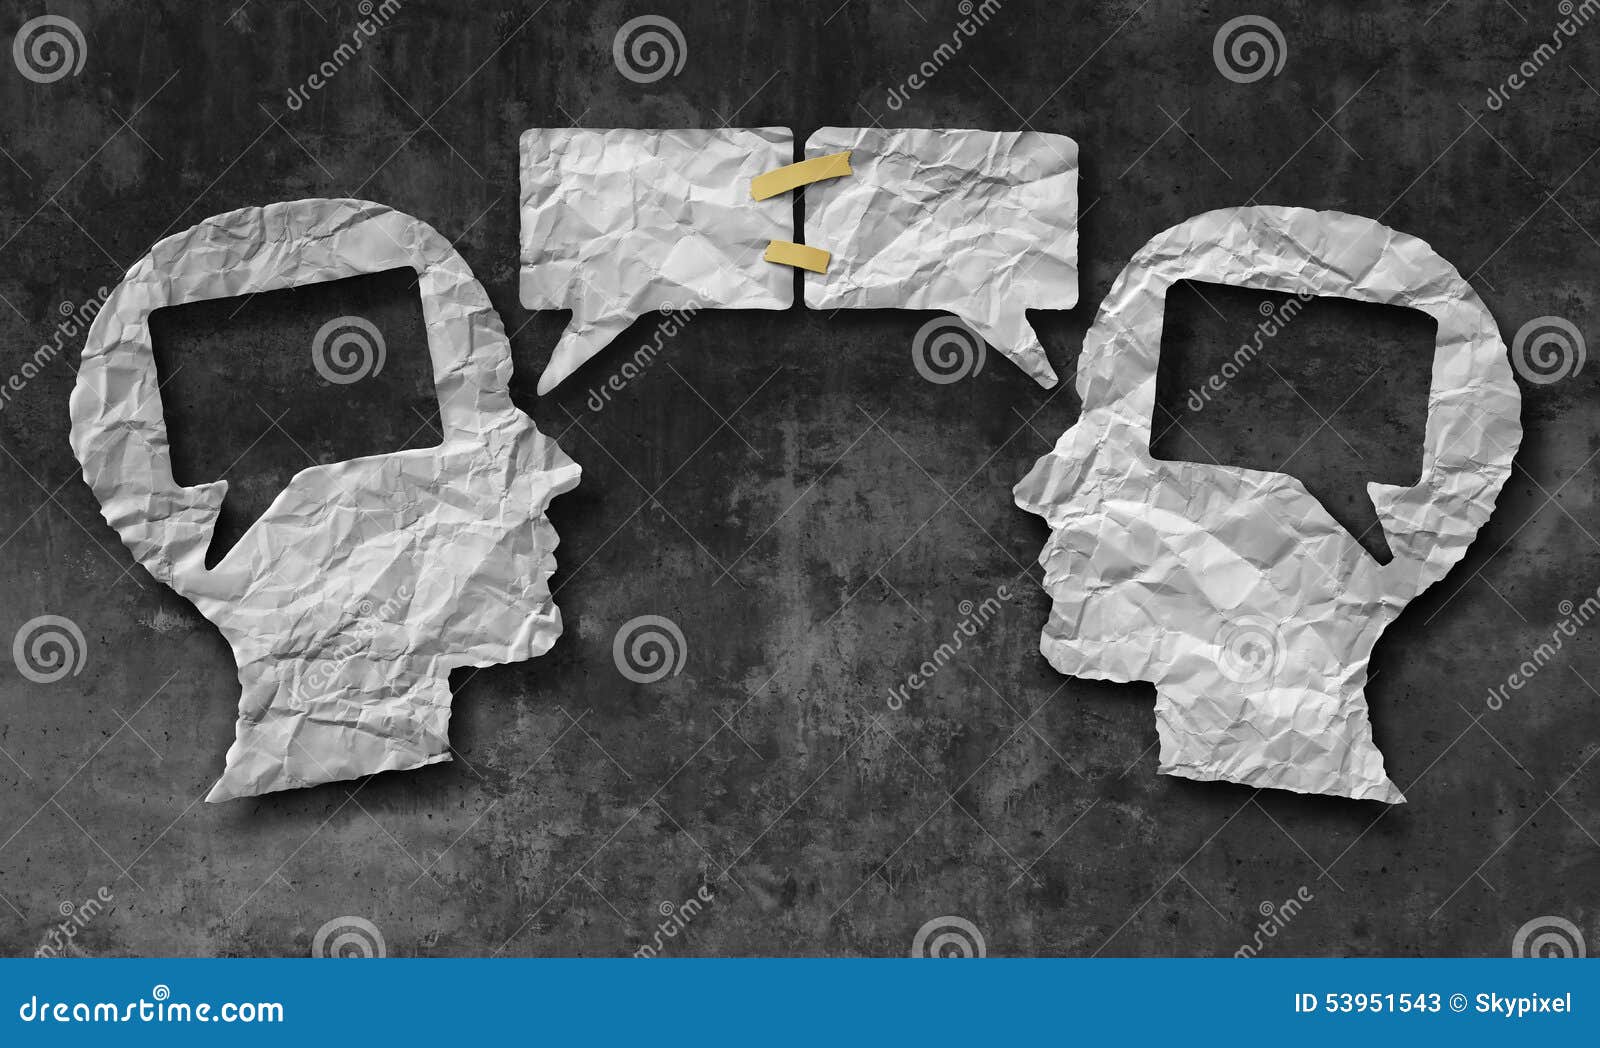 Discurso junto. Falando junto o conceito social dos meios como dois amarrotaram os pedaços de papel dados forma como uma cabeça humana com as bolhas da conversa ou os ícones da bolha do discurso gravadas como um símbolo de uma comunicação para a compreensão do negócio e o acordo de acordo